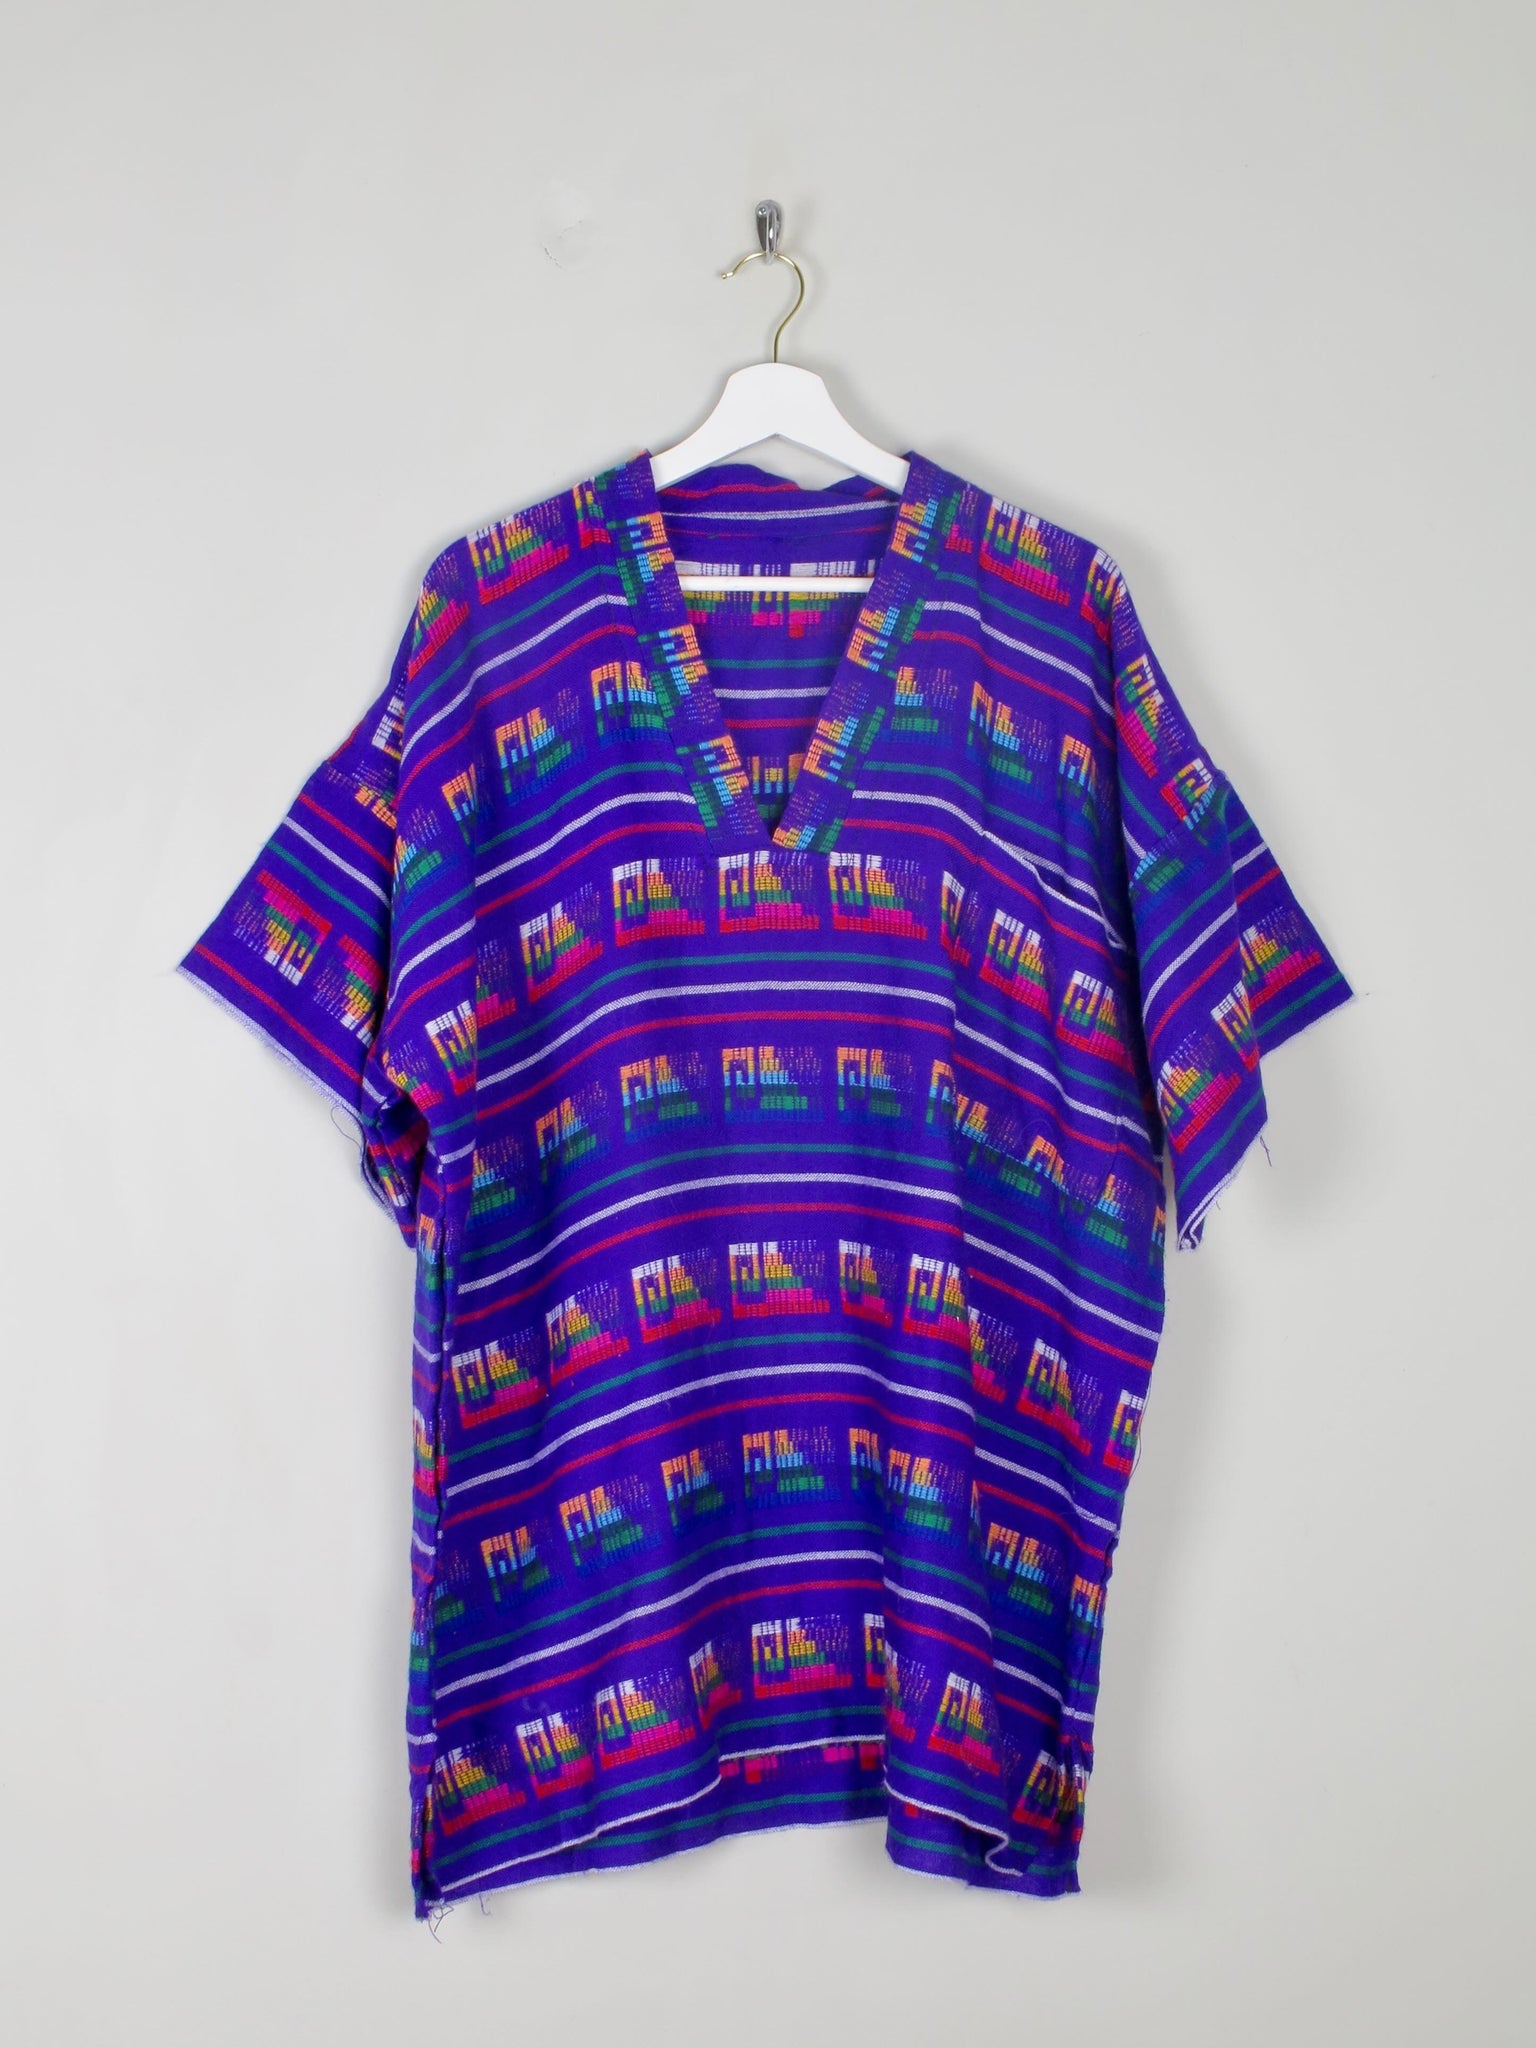 Men's Purple Aztec Print Top L/XL - The Harlequin